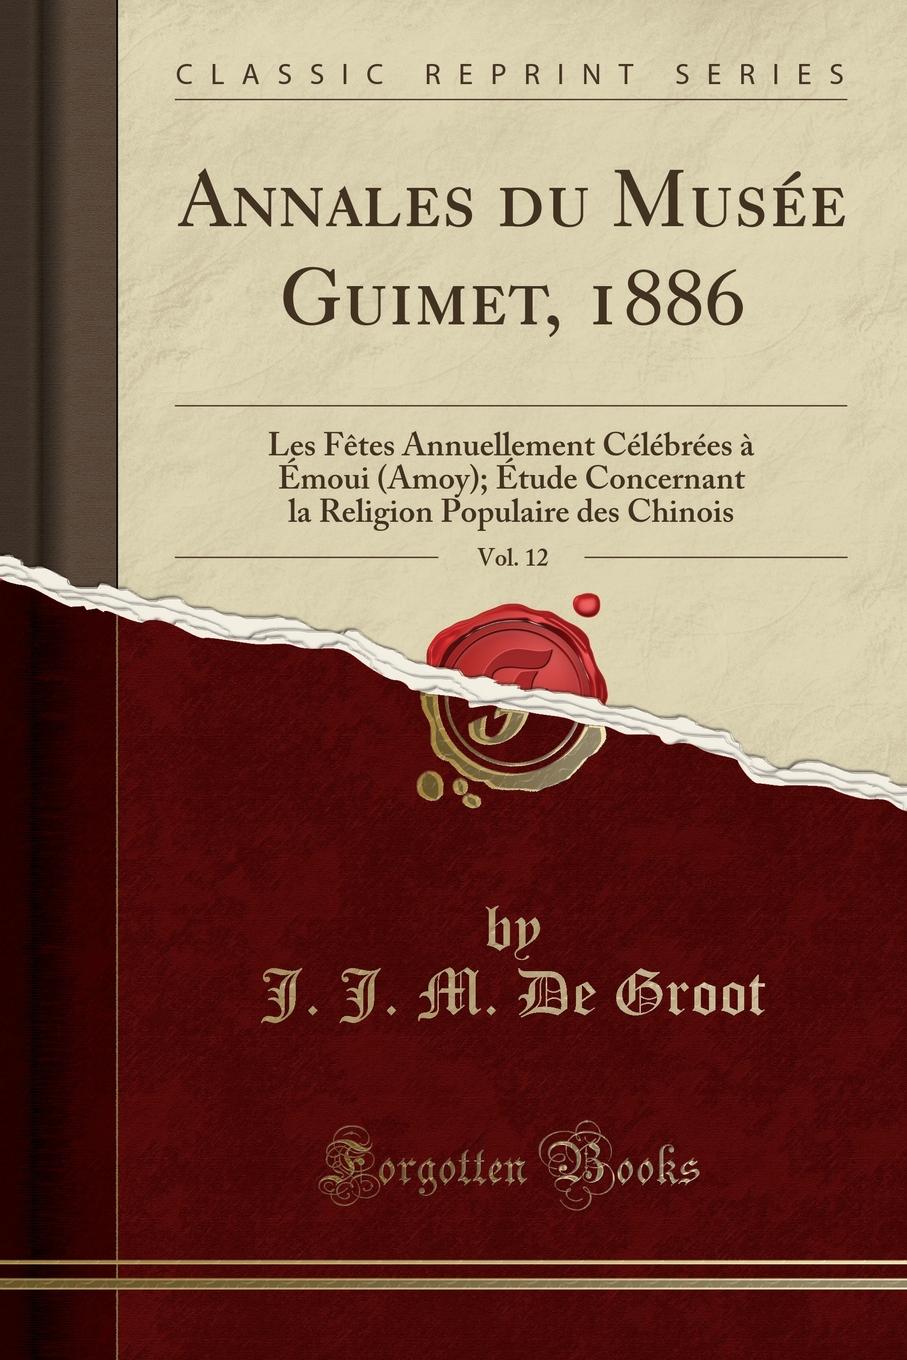 Annales du Musee Guimet, 1886, Vol. 12. Les Fetes Annuellement Celebrees a Emoui (Amoy); Etude Concernant la Religion Populaire des Chinois (Classic Reprint)